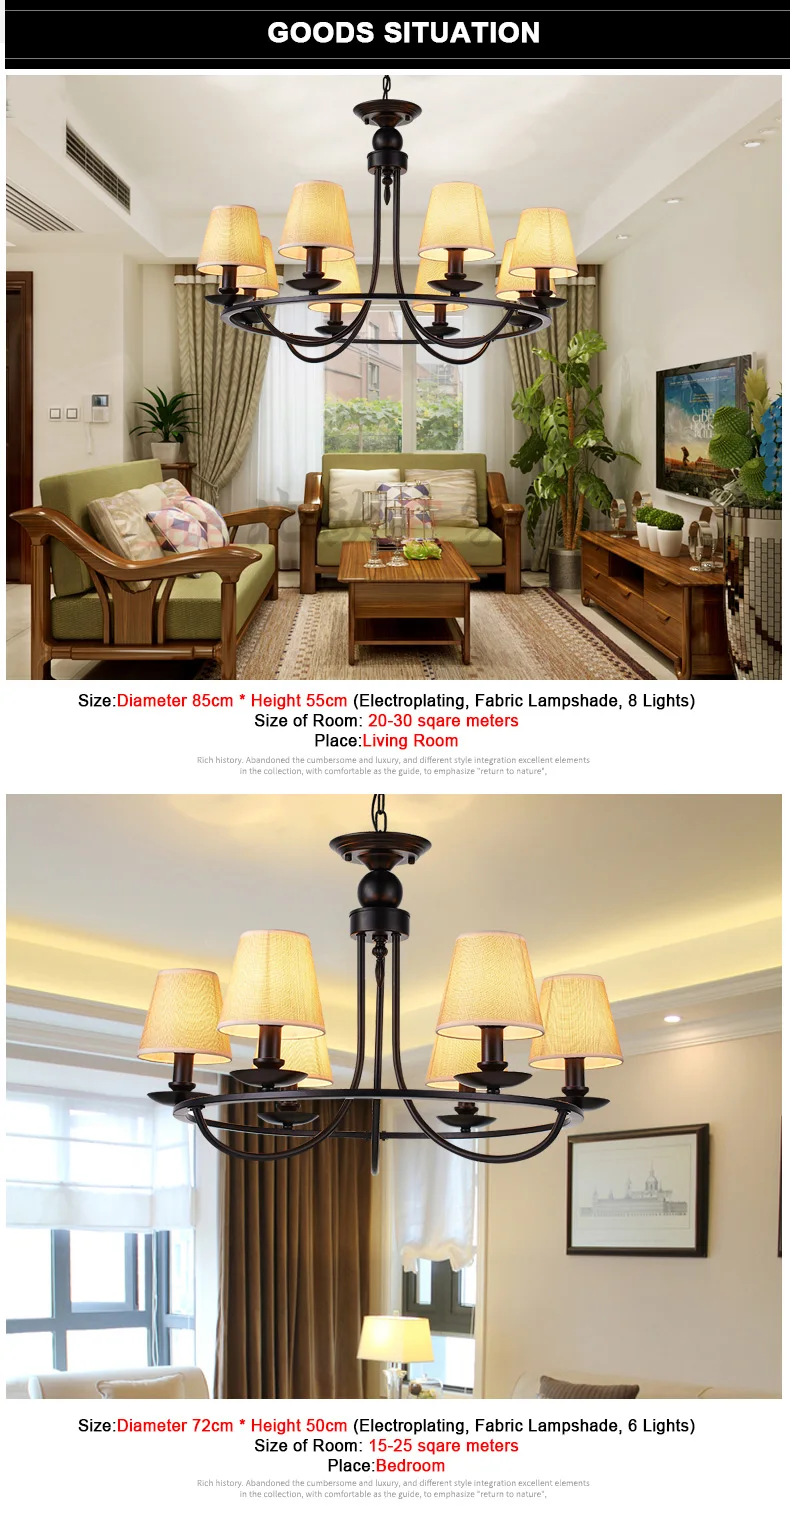 Люстра светодиодный в американском стиле винтажный подвесной бра абажур из ткани потолочный светильник для гостиной столовой окрашенный E14 разъем